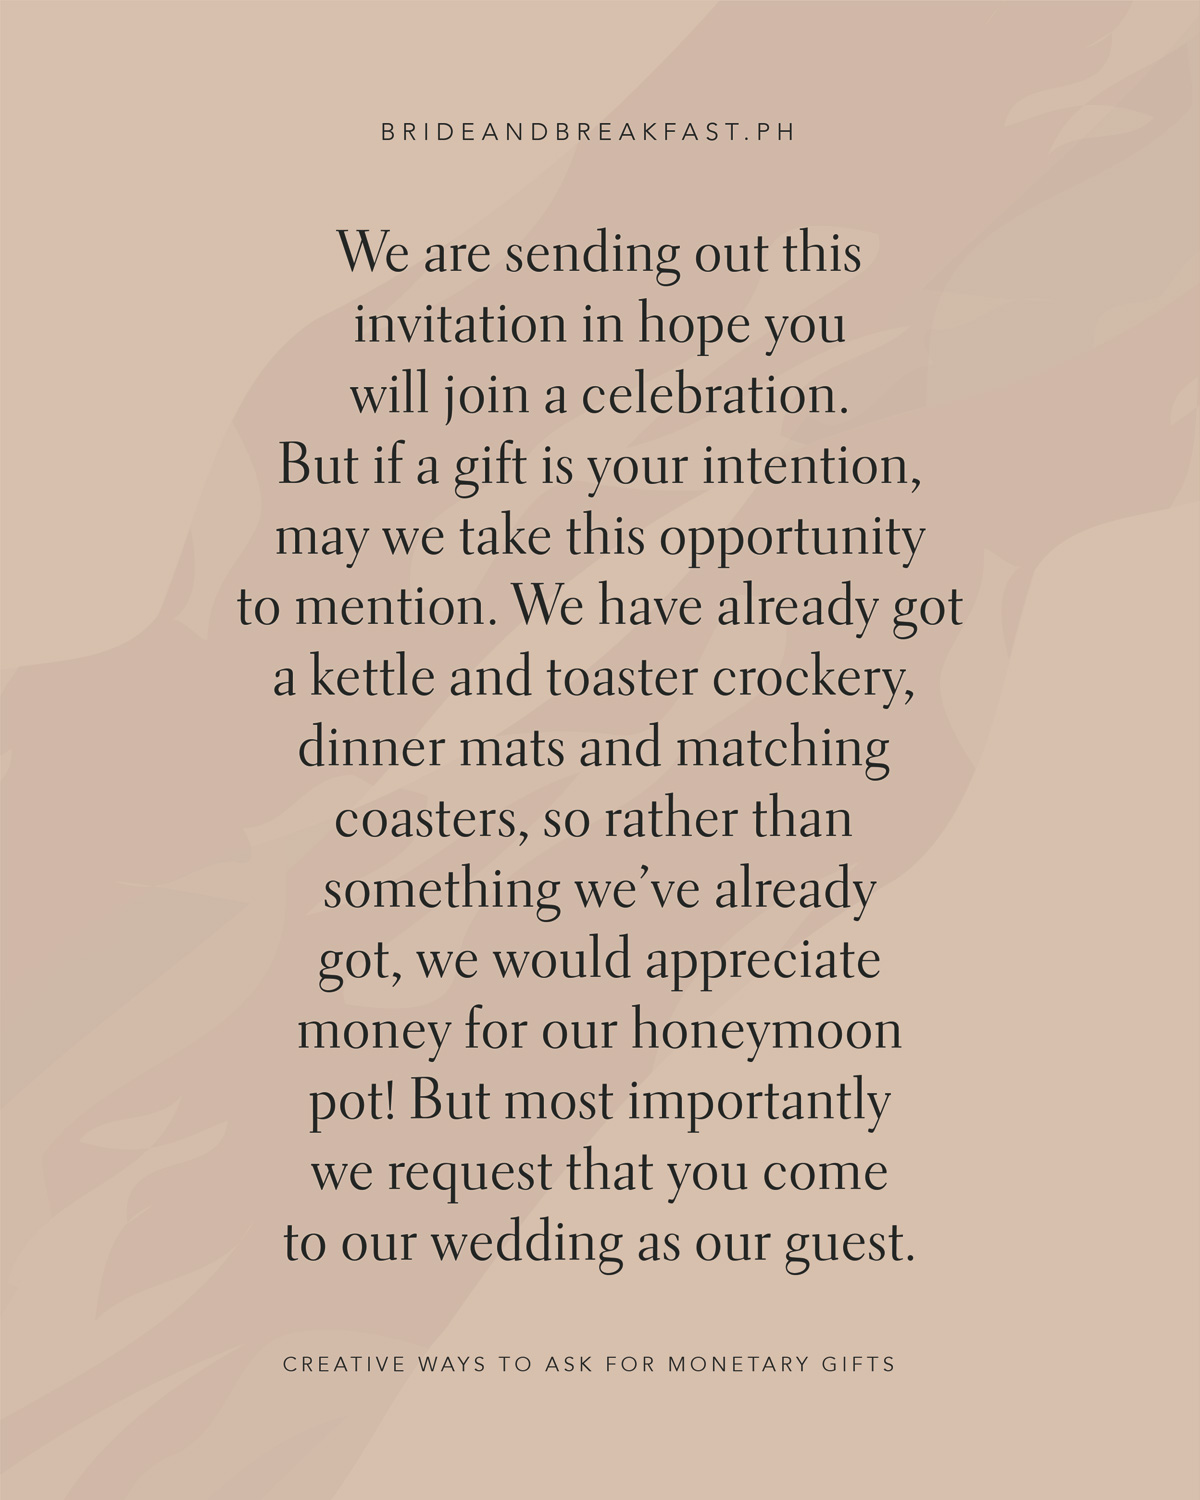 私たちはあなたがお祝いに参加することを願って、この招待状を送信していますが、贈り物があなたの意図であれば、私たちはすでにケトルとトースターの食器、ディナーマットとマッチングコースターを持っている言及するこの機会を取ることができるので、私たちはすでに持っているものではなく、私たちは私たちの新婚旅行の鍋のためのお金をいただければ幸いですが、最も重要なのは、私たちはあなたが私たちのゲストとして私たちの結婚式に来ることを要求します。